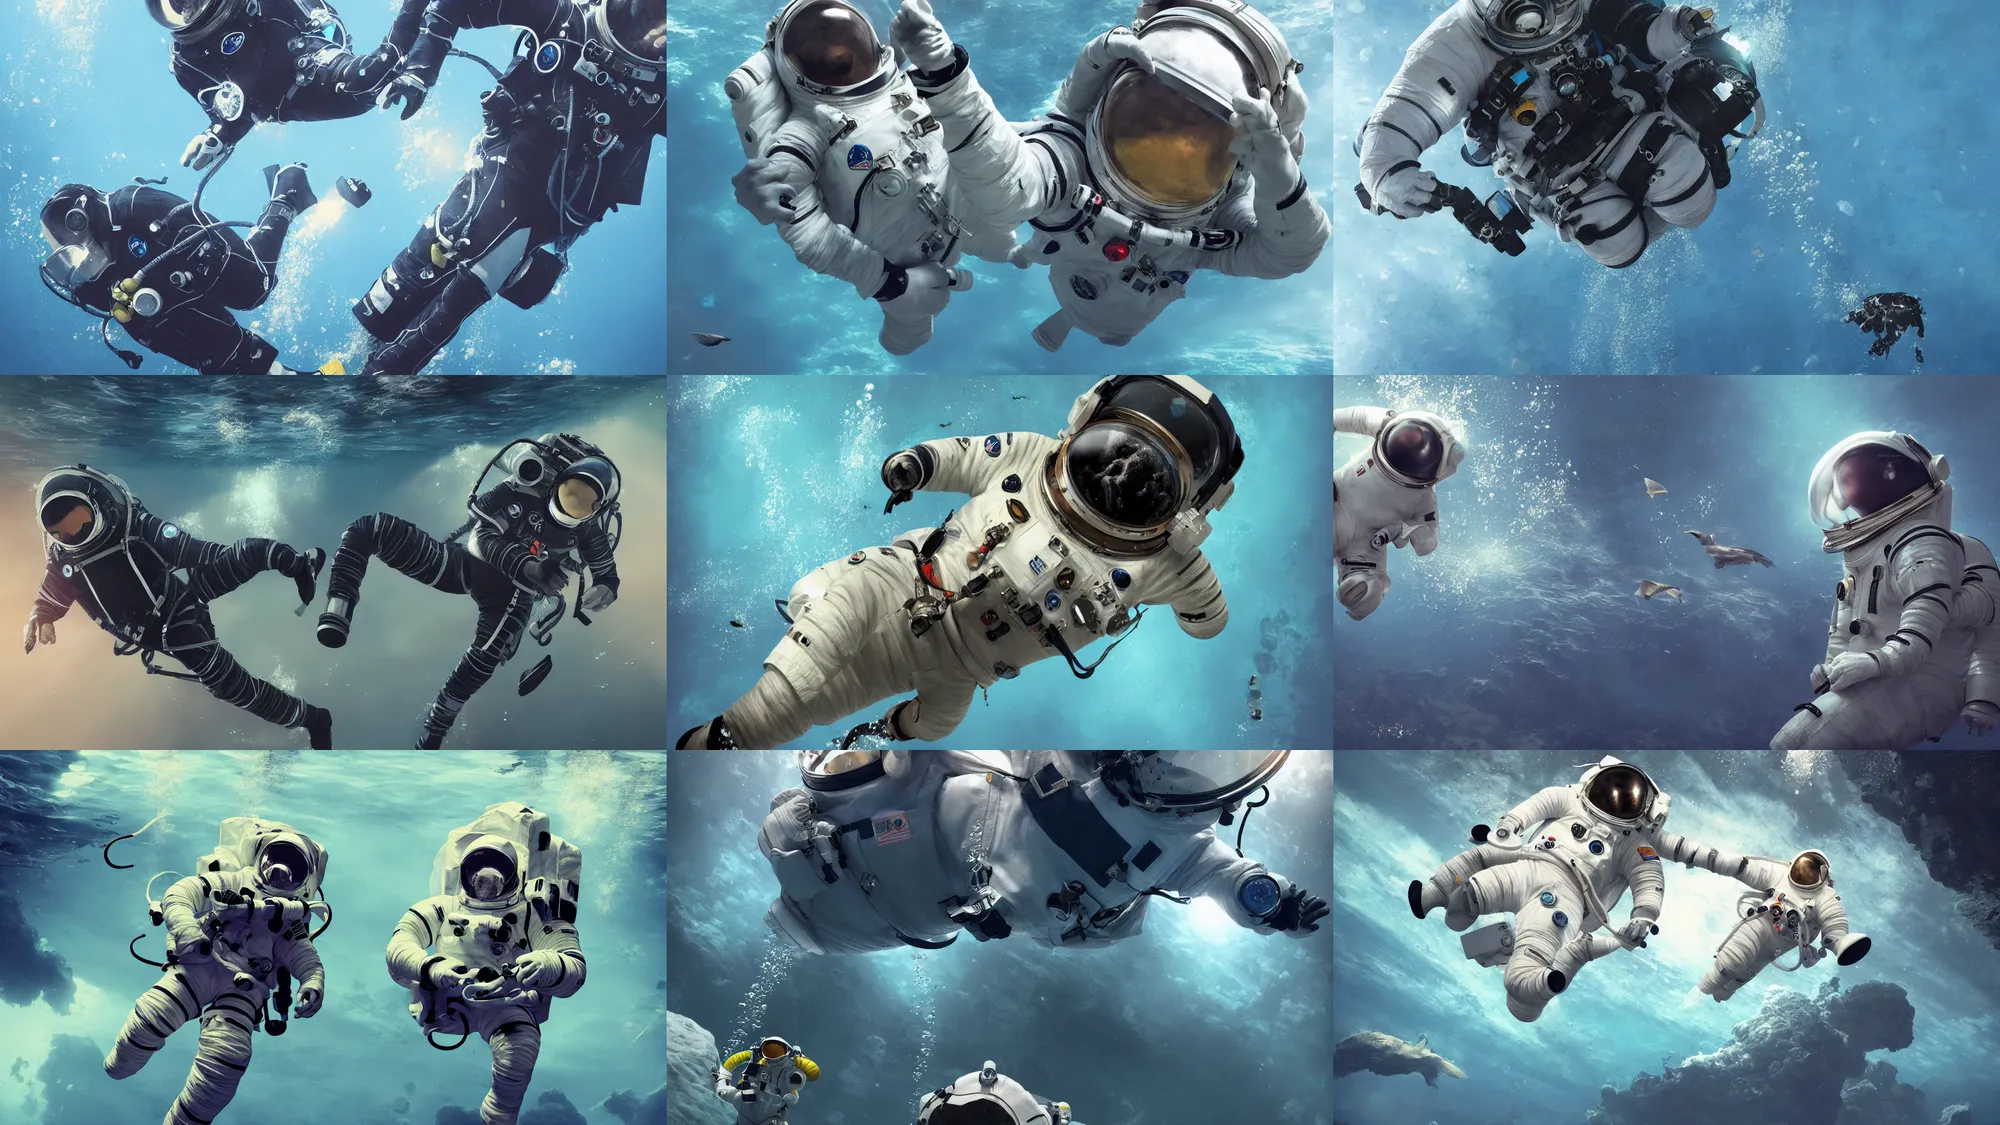 Prompt: astronaut suit, diving underwater, deep sea, birds, cinematic, hyper-realistic, high resolution, concept art, artstation